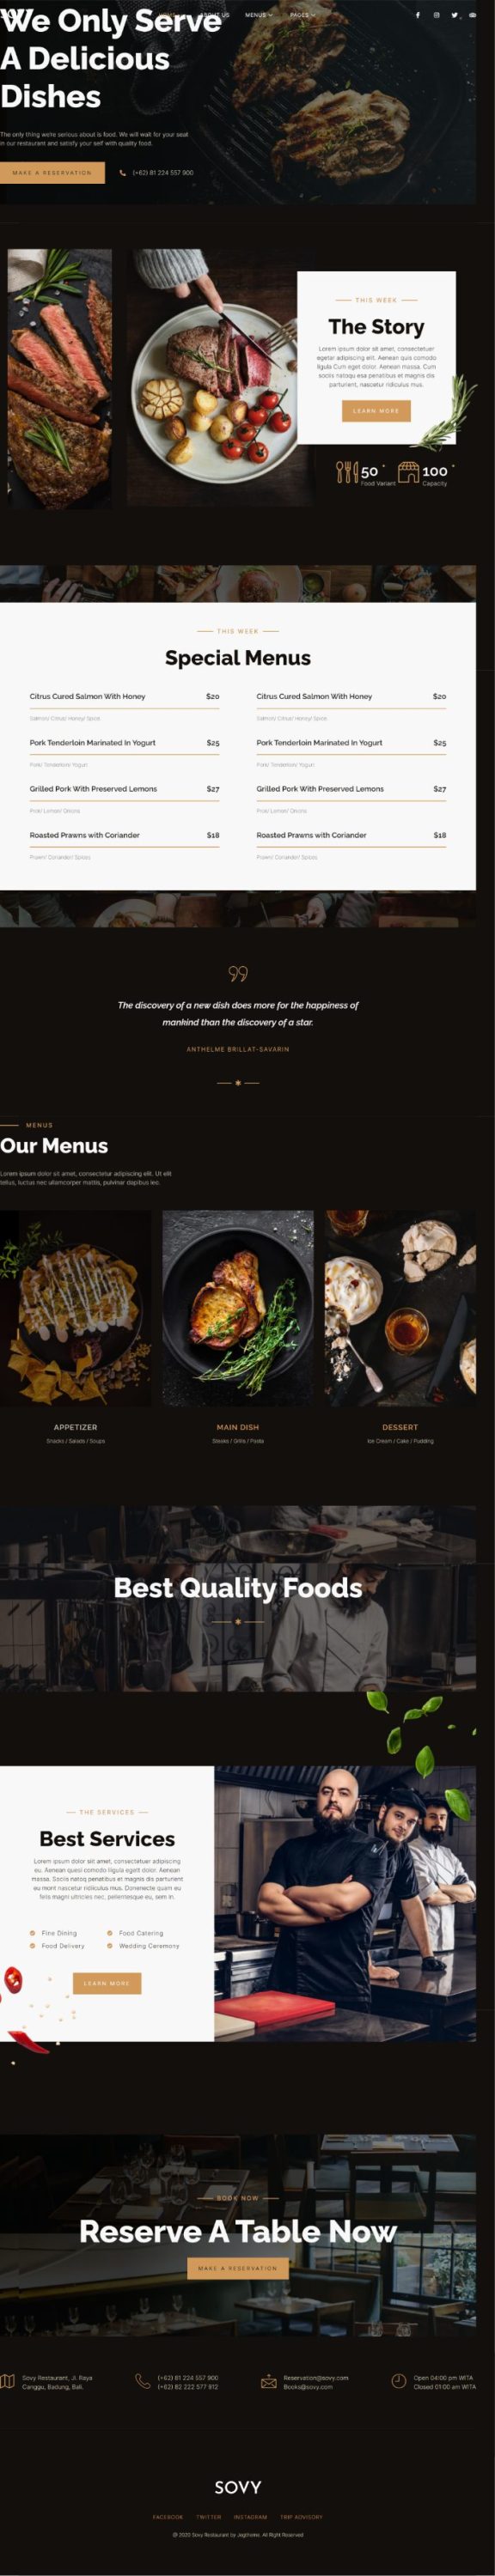 Mẫu website dịch vụ nhà hàng - Sovy 2